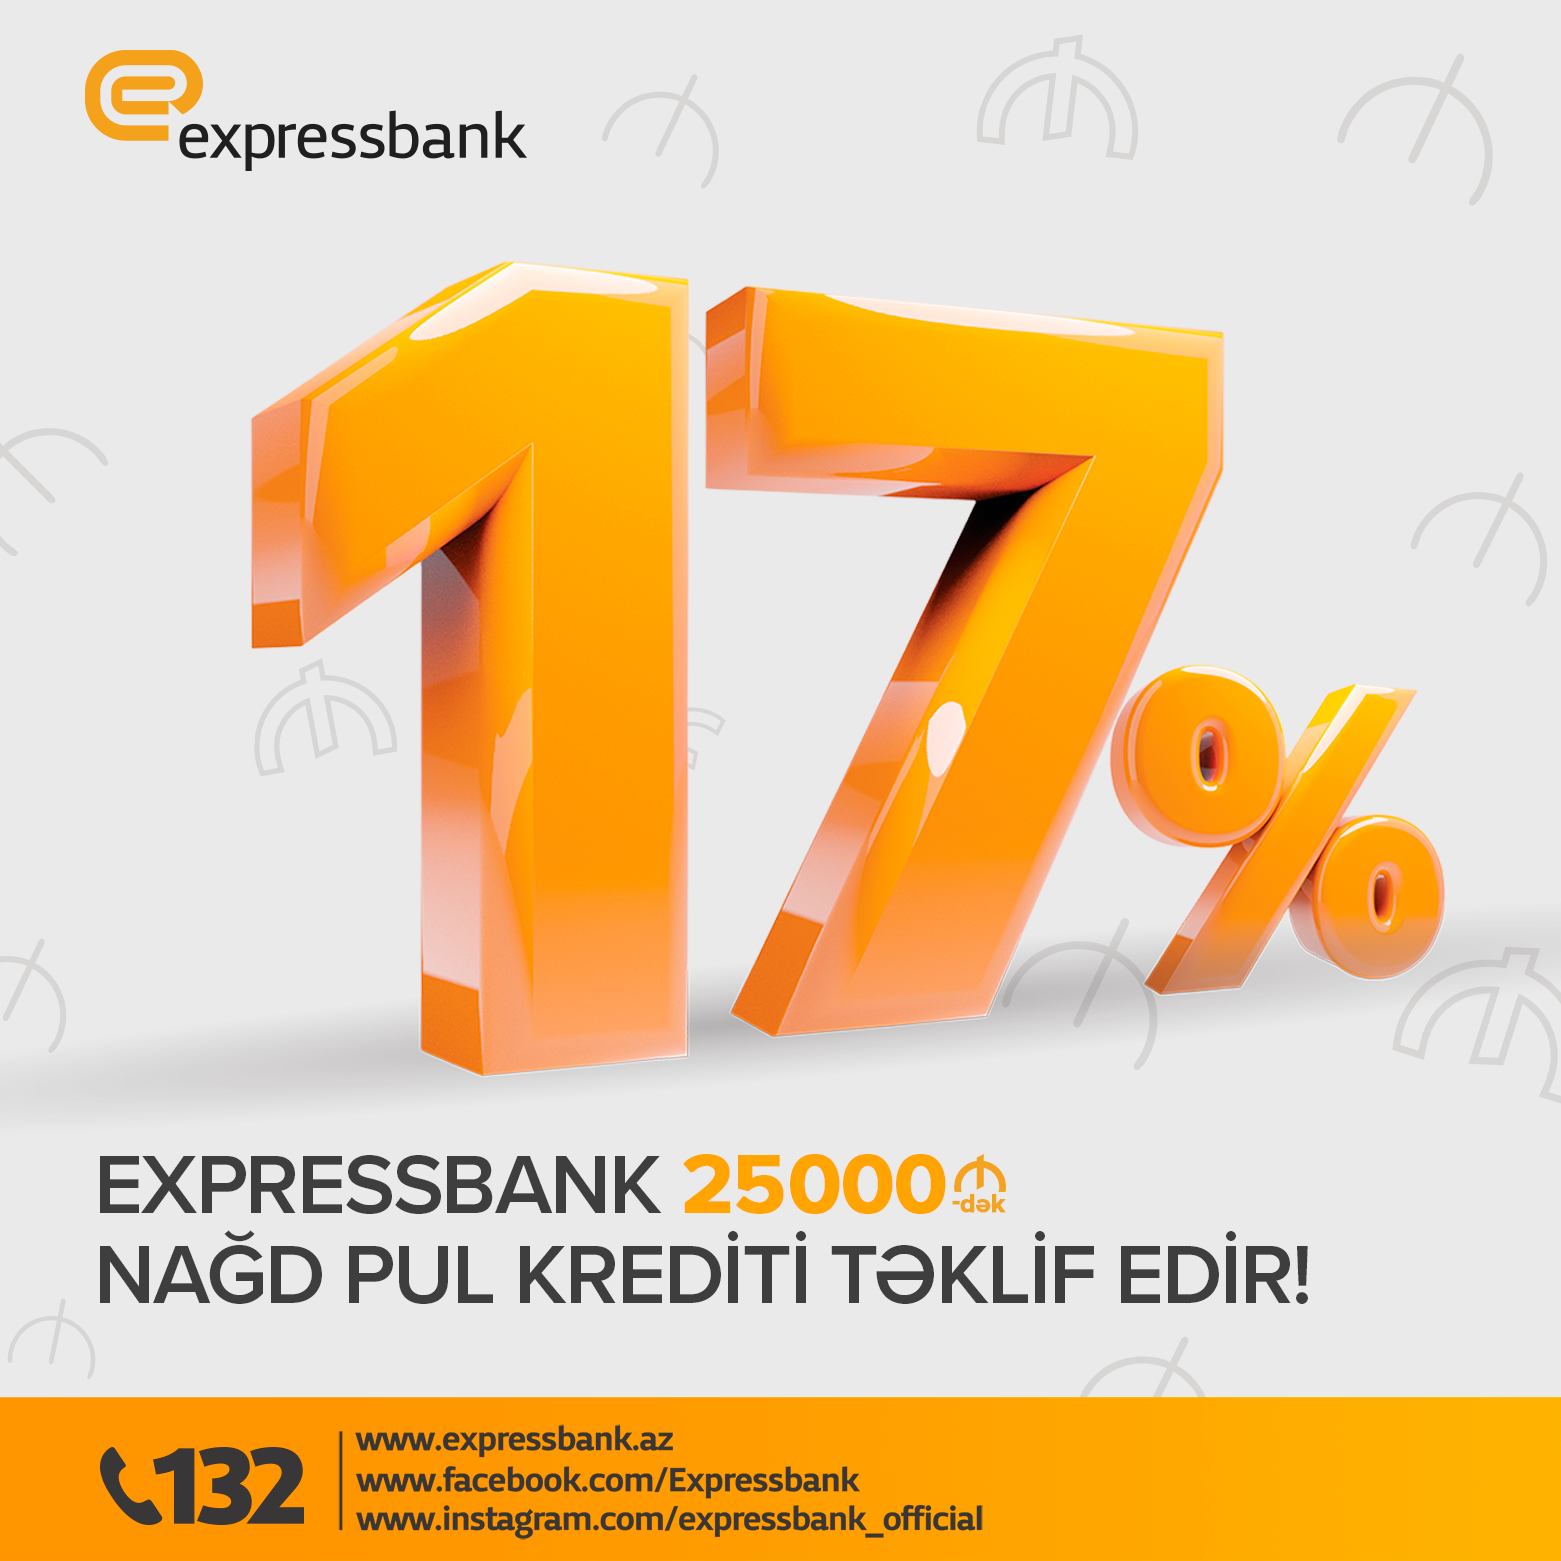 Expressbank aşağı faizlərlə 25 000 AZN-dək nağd pul krediti təklif edir